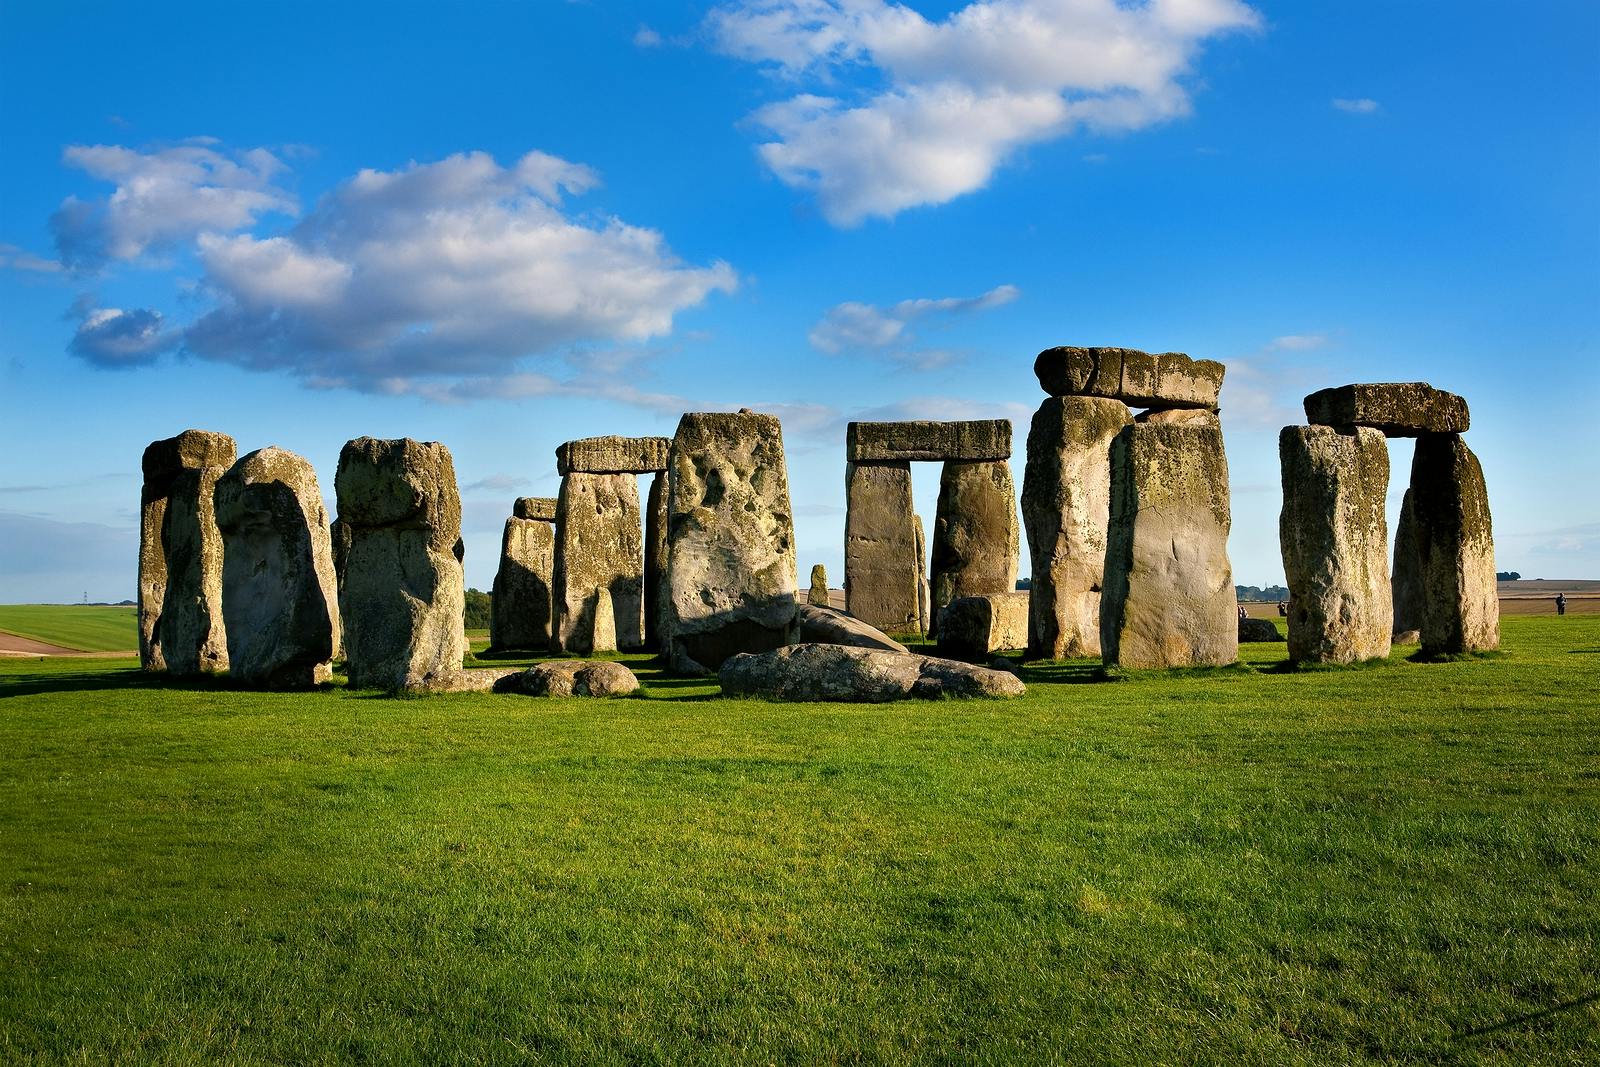 Jednodniowa wycieczka do Stonehenge i Bath z Londynu z opcjonalnym wejściem do rzymskiej łaźni